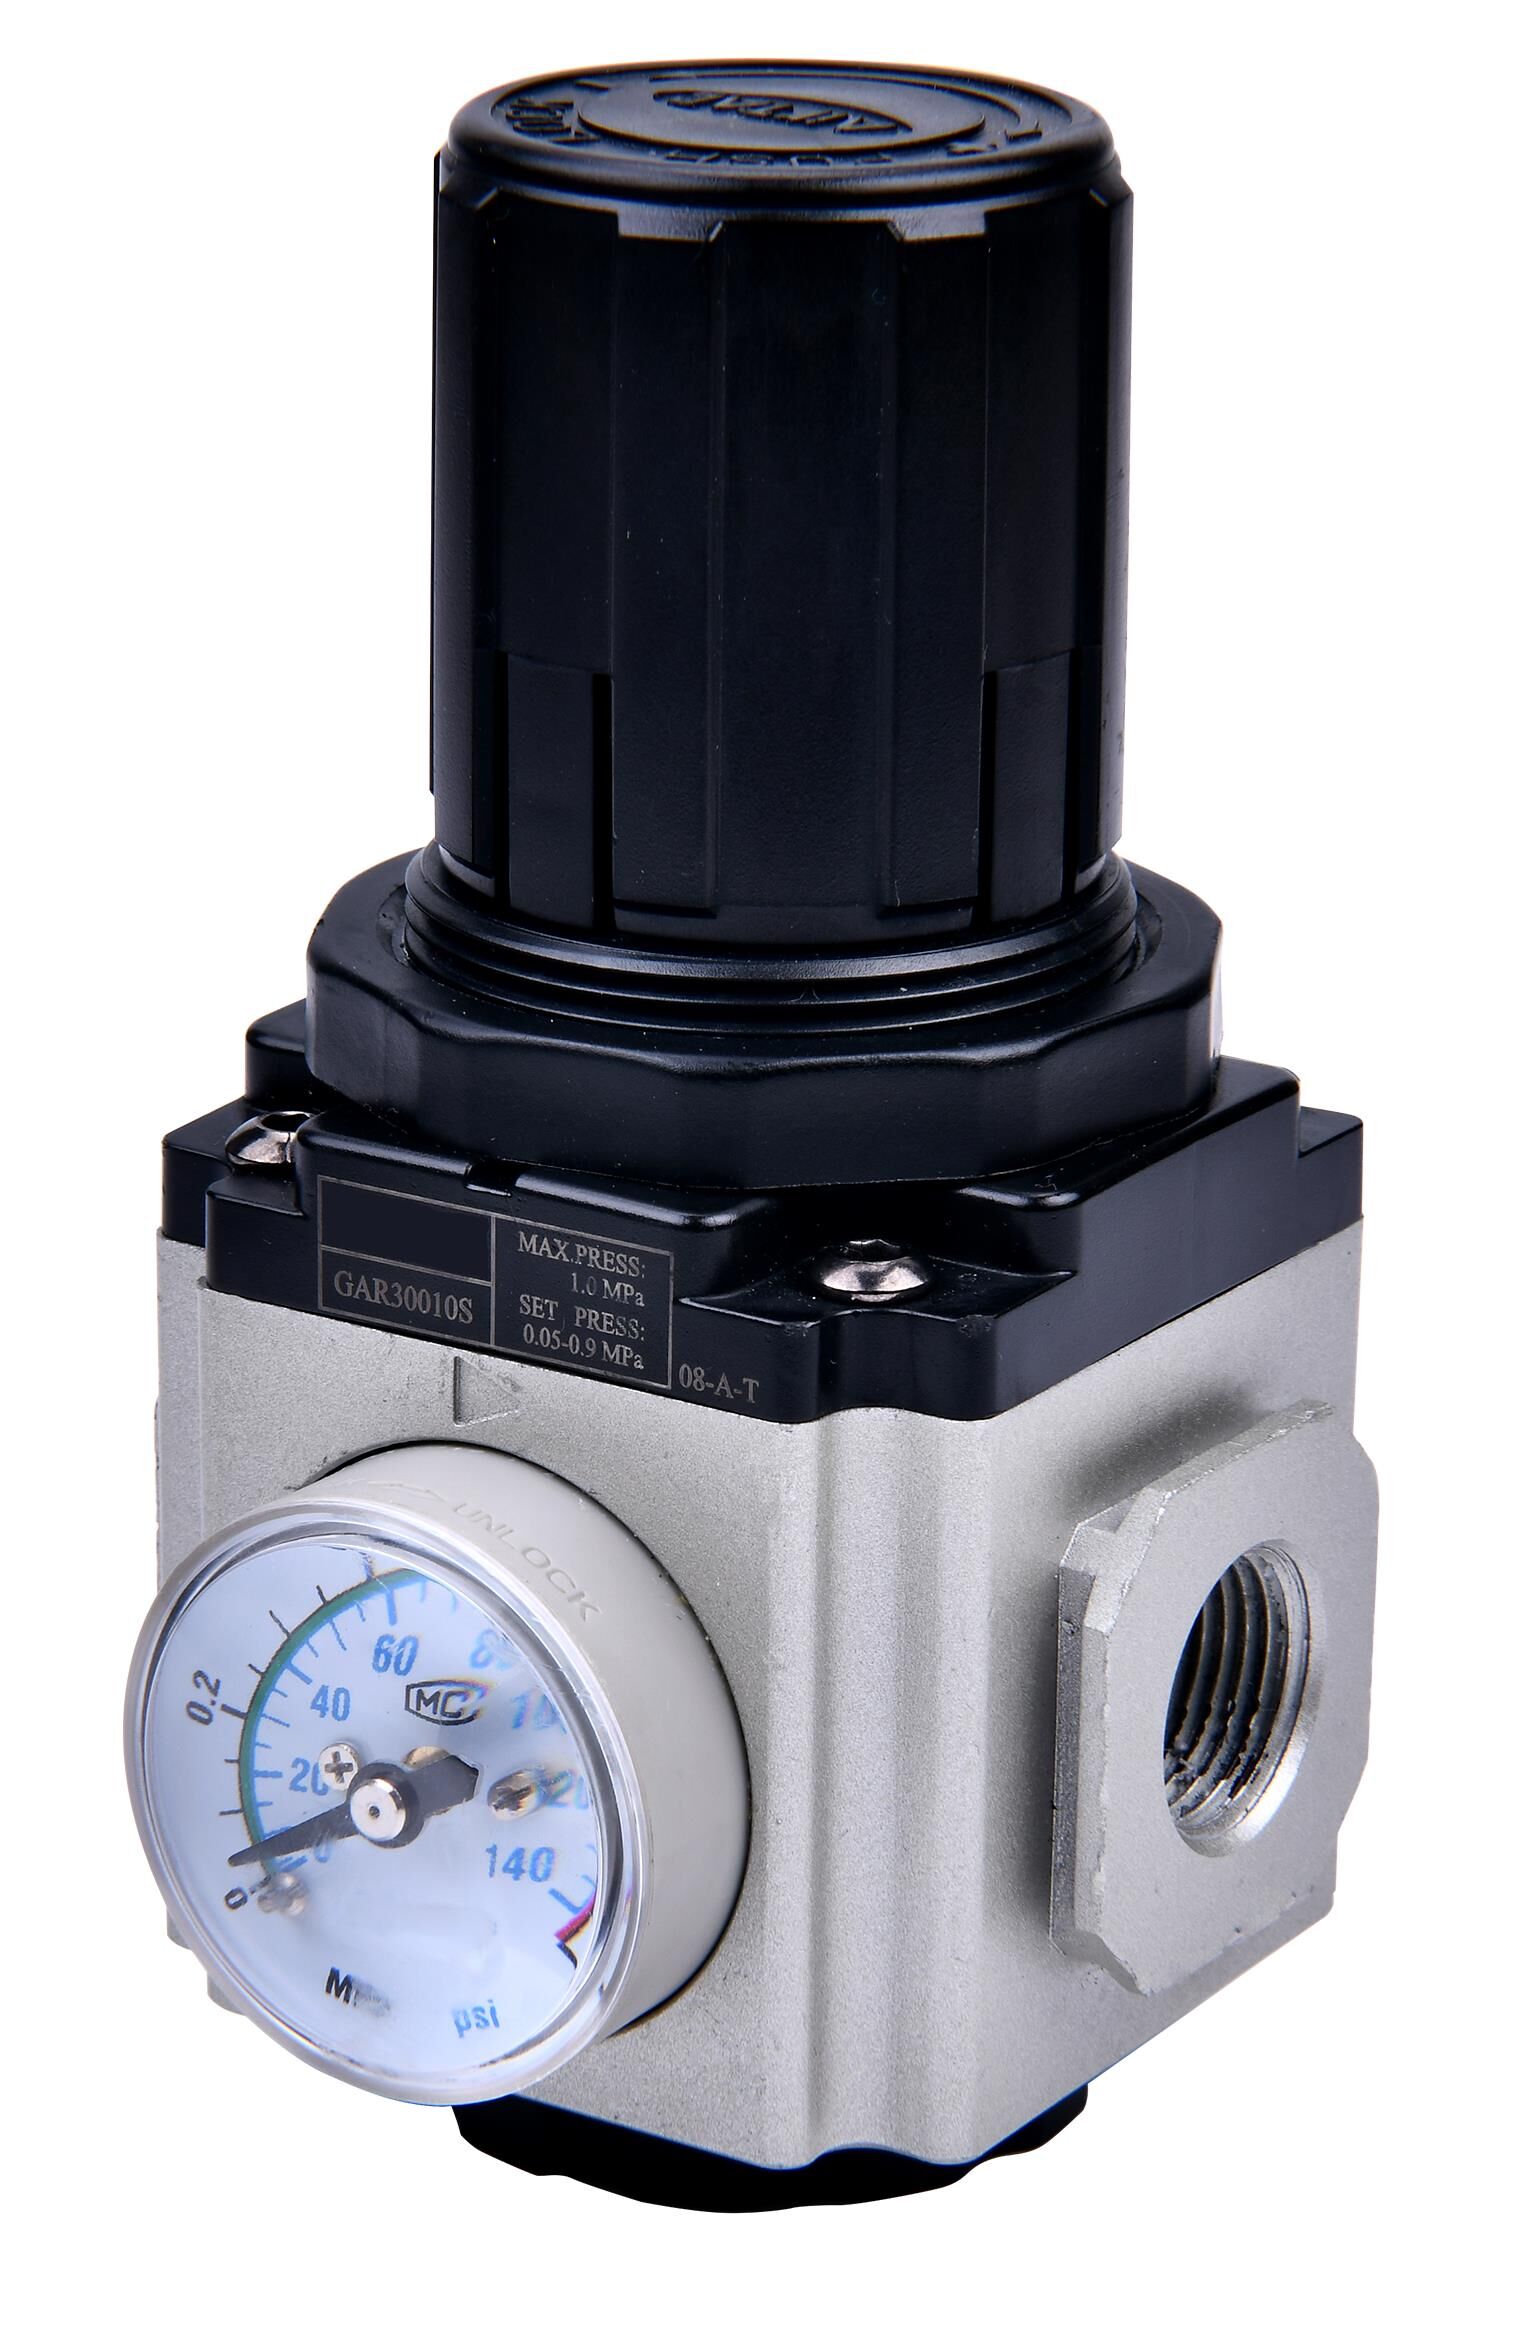 Regolatore di pressione -GA-, con manometro, BG 300, G 1/4, 0,5 - 9 bar